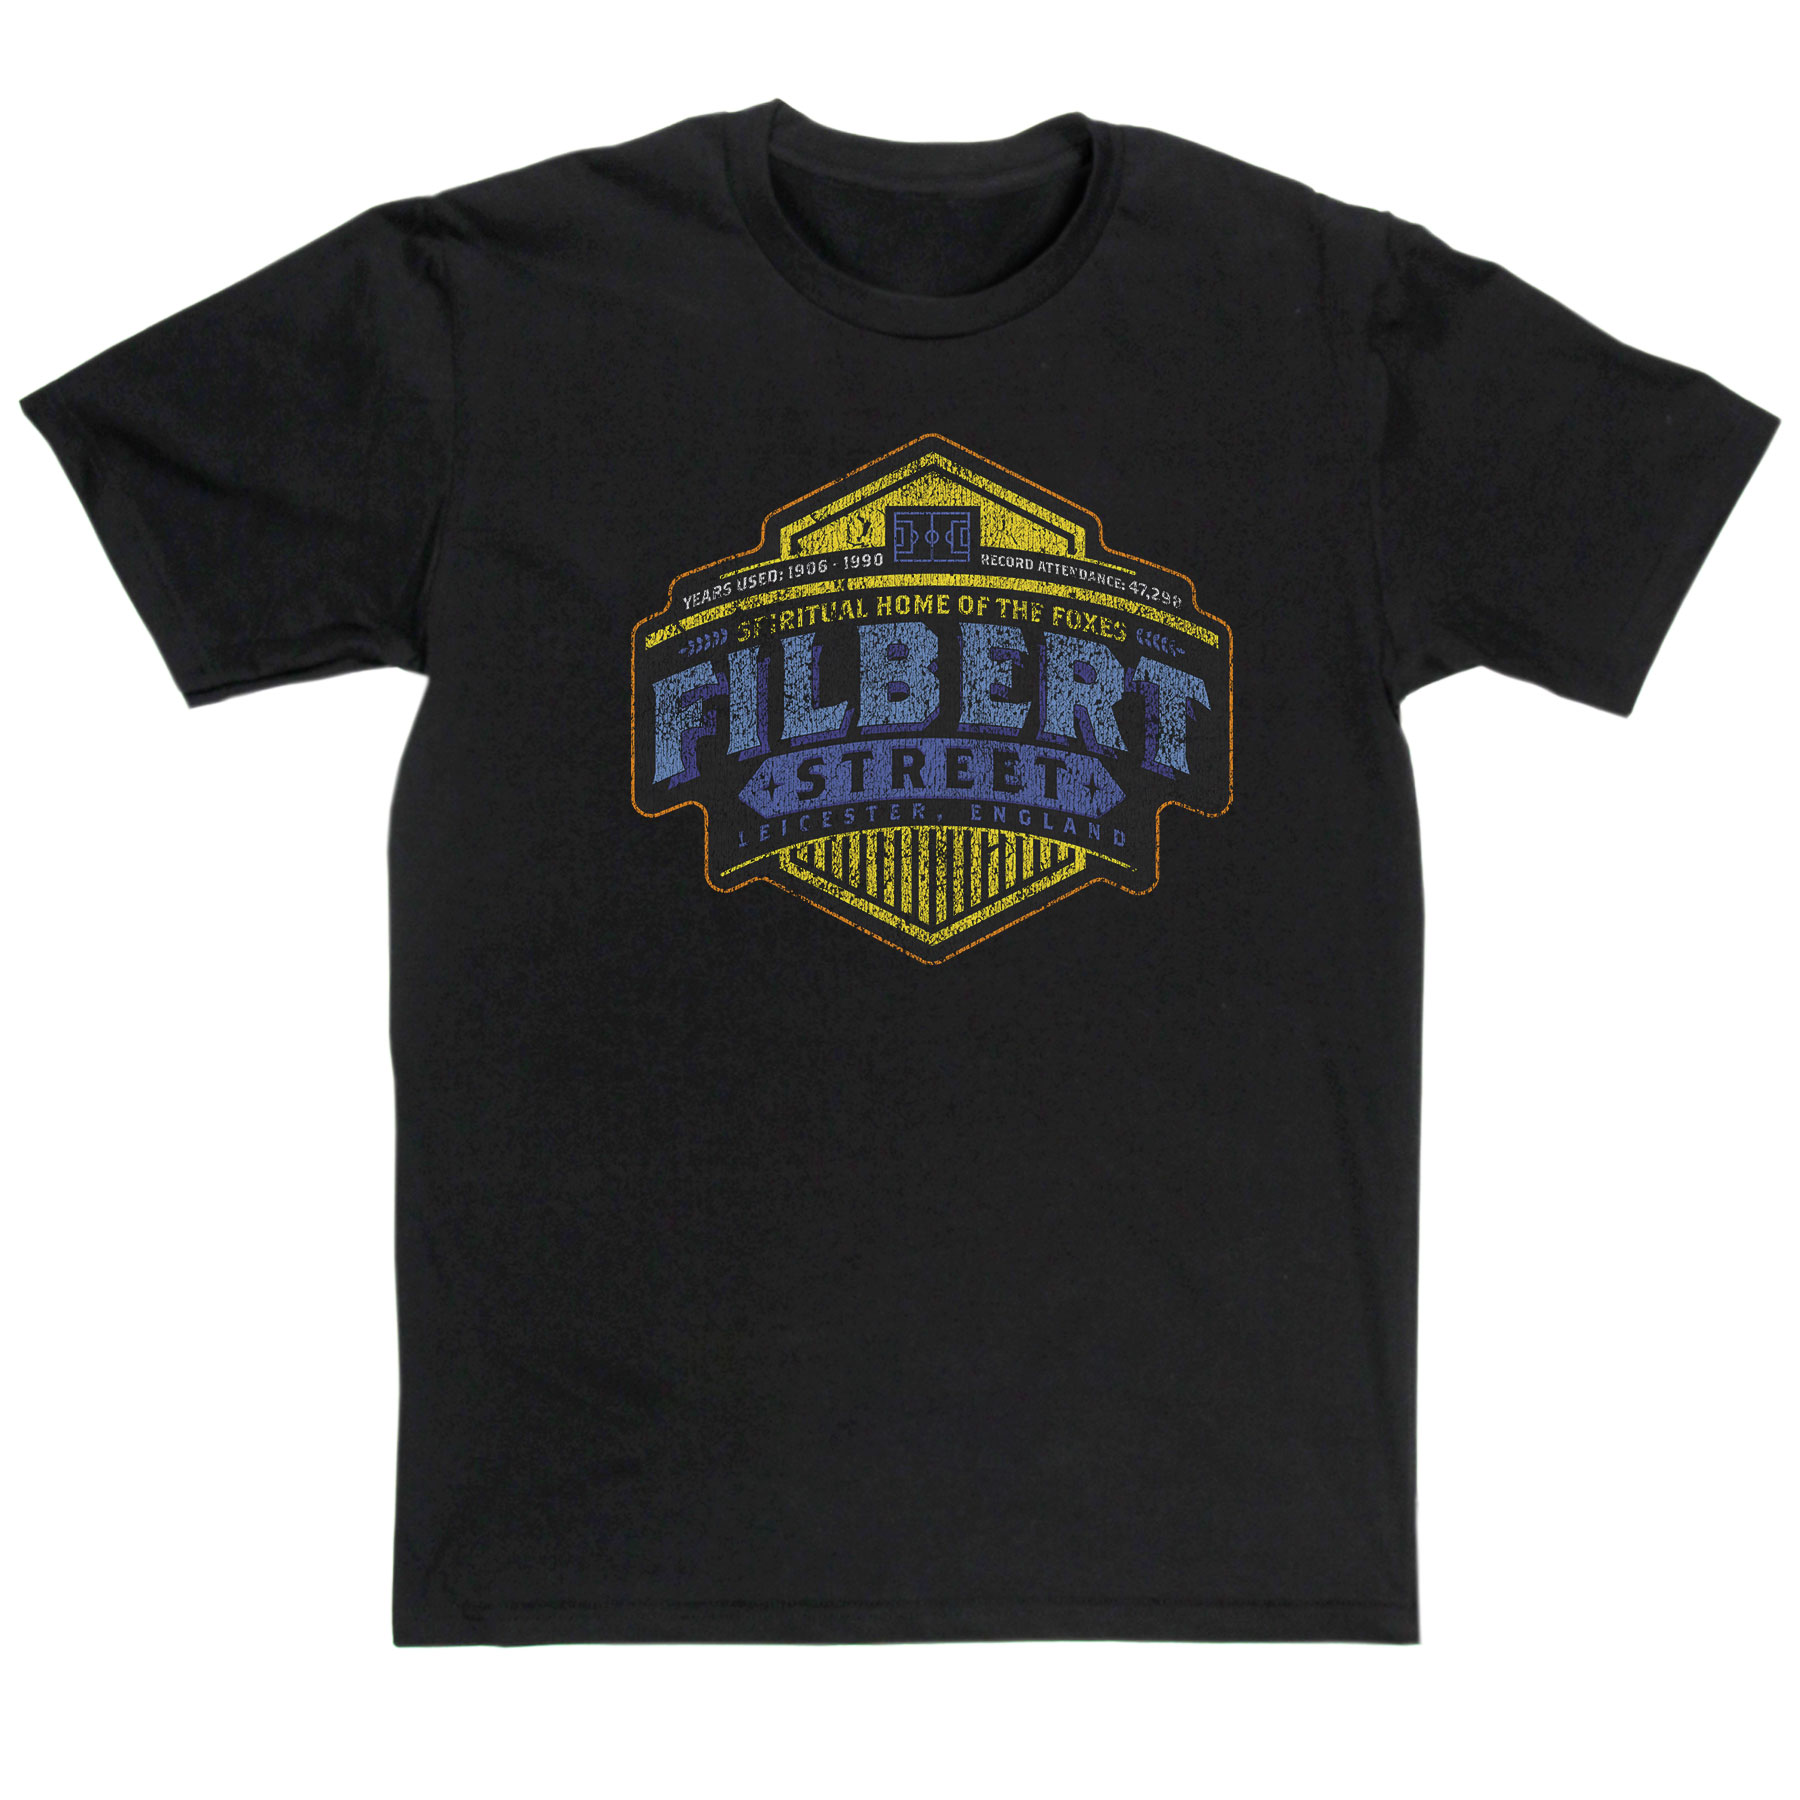 Filbert Street T-Shirt